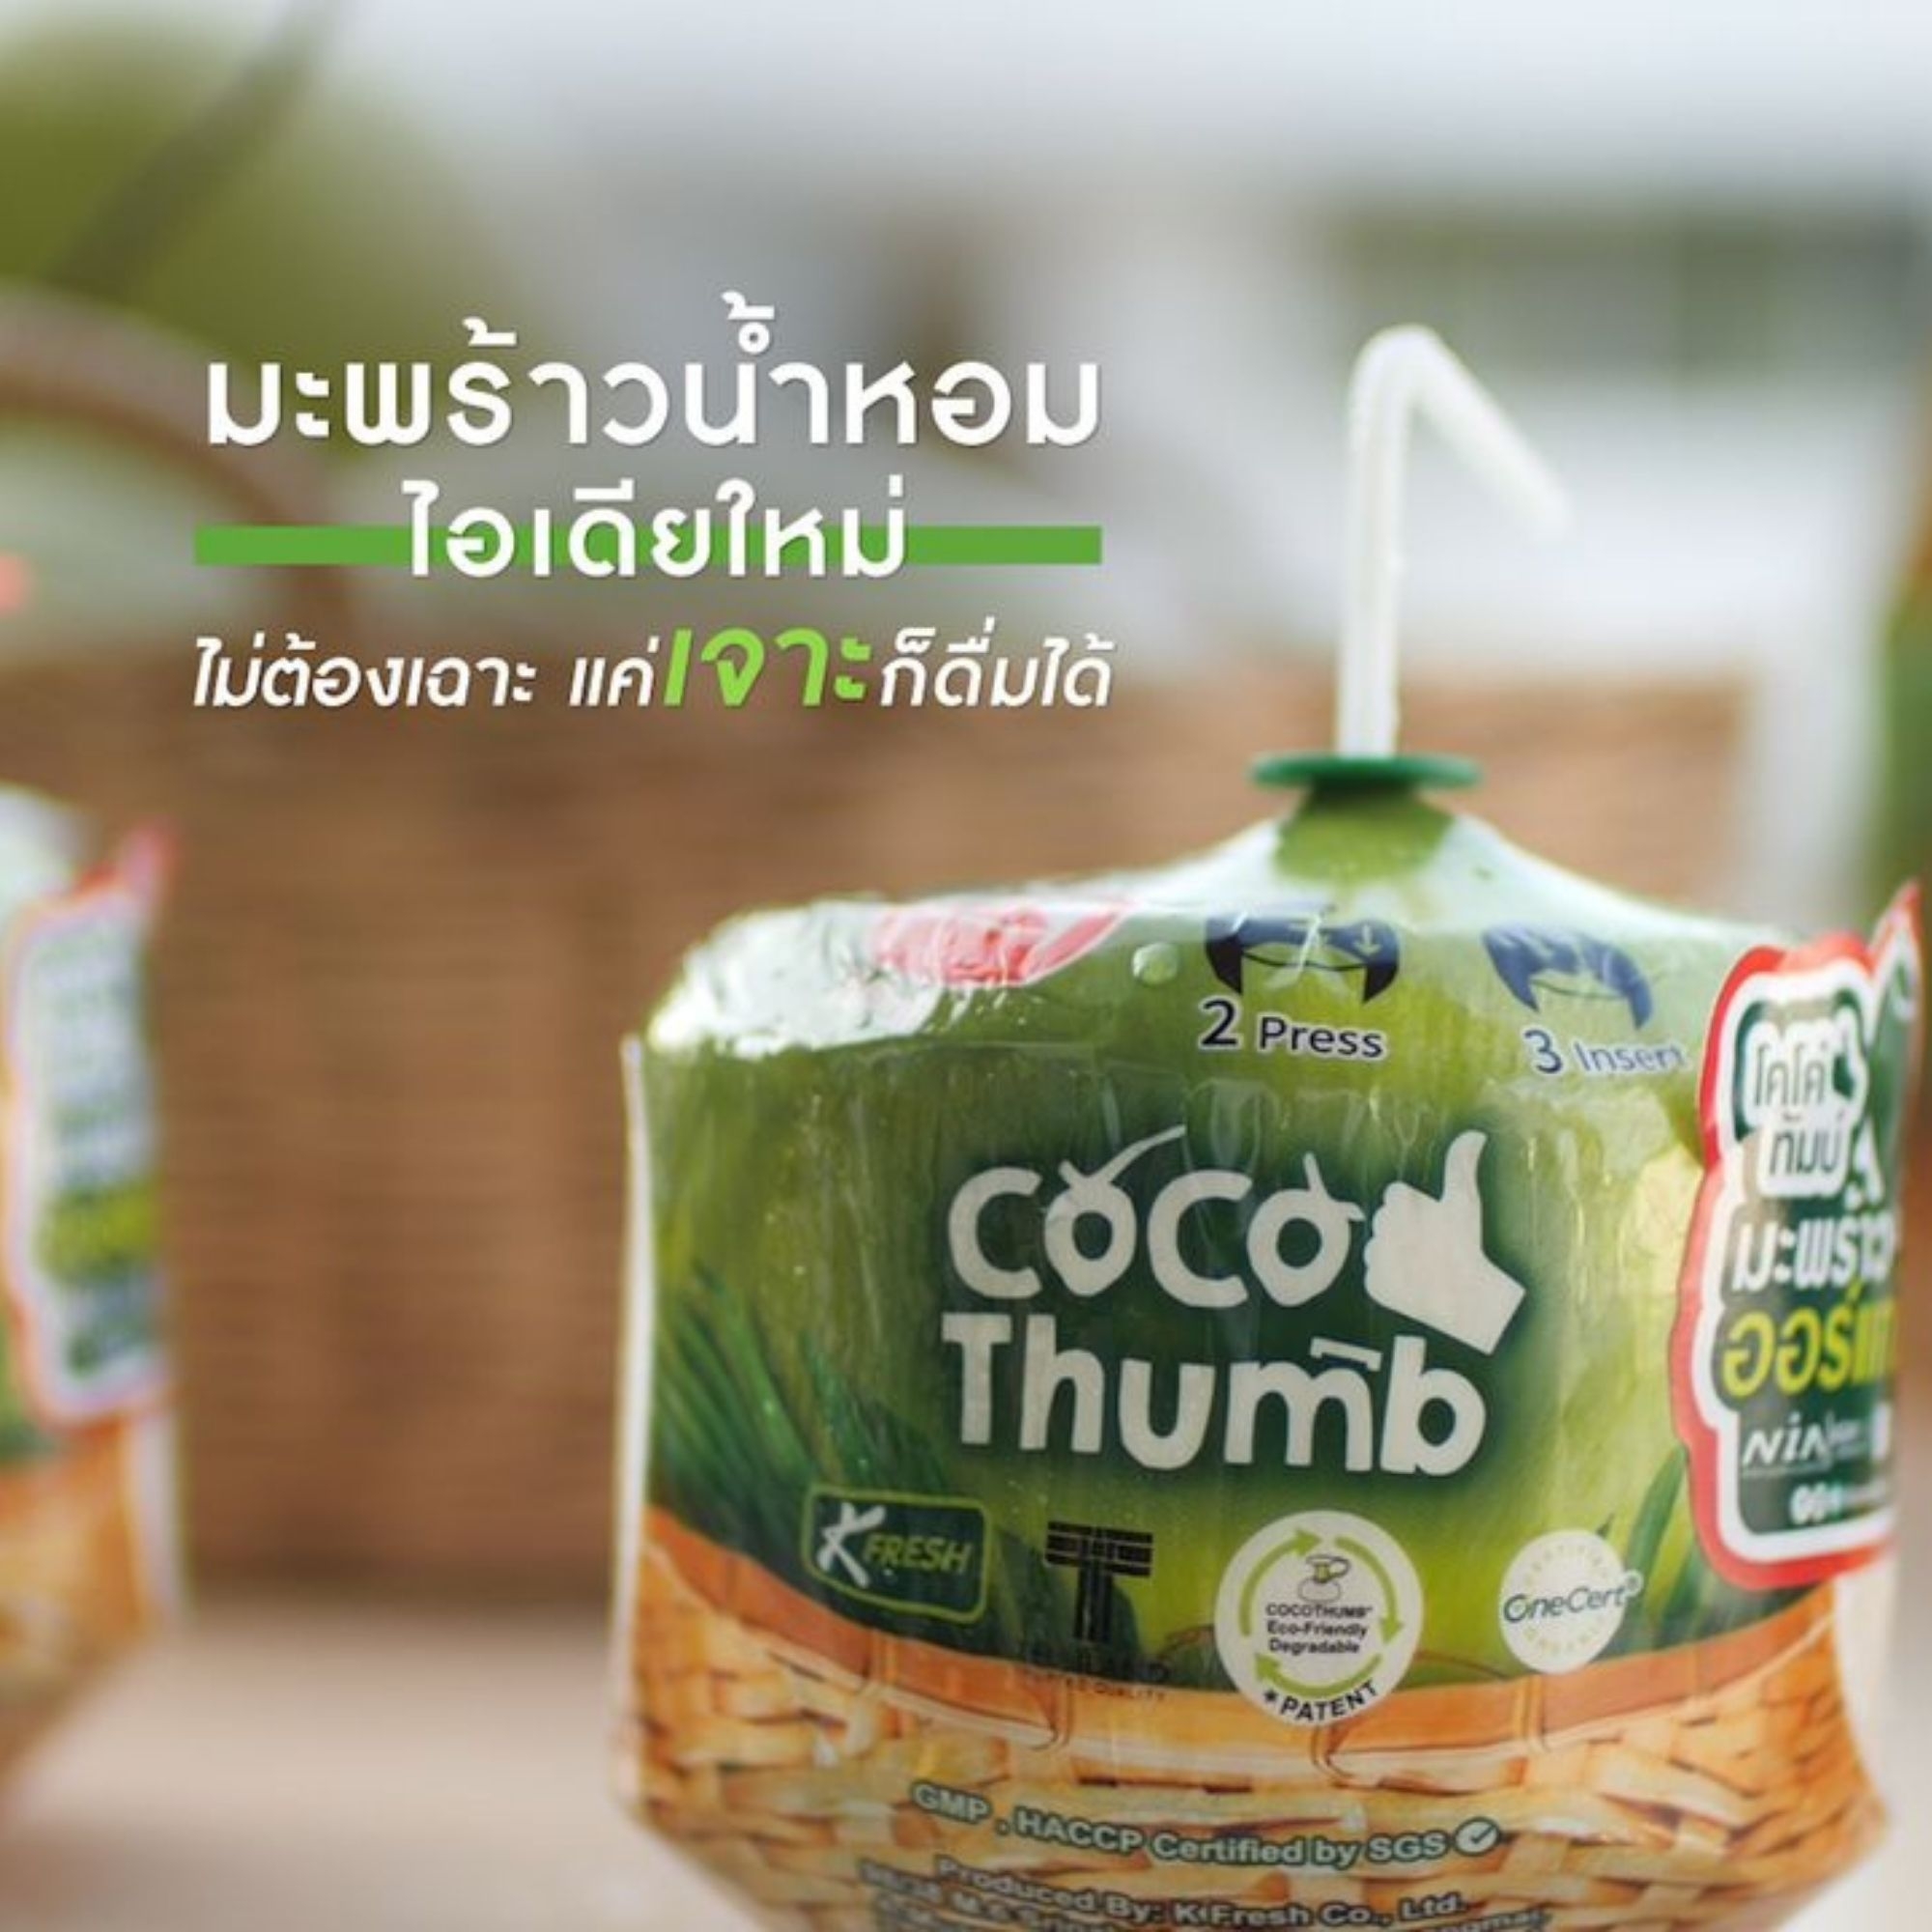 รูปภาพเพิ่มเติมเกี่ยวกับ กล่อง 4 ลูก: โคโค ทัมบ์ Coco Thumb มะพร้าวน้ำหอม พร้อมดื่ม มะพร้าวน้ำหอมลูกสดๆ พร้อมดื่ม